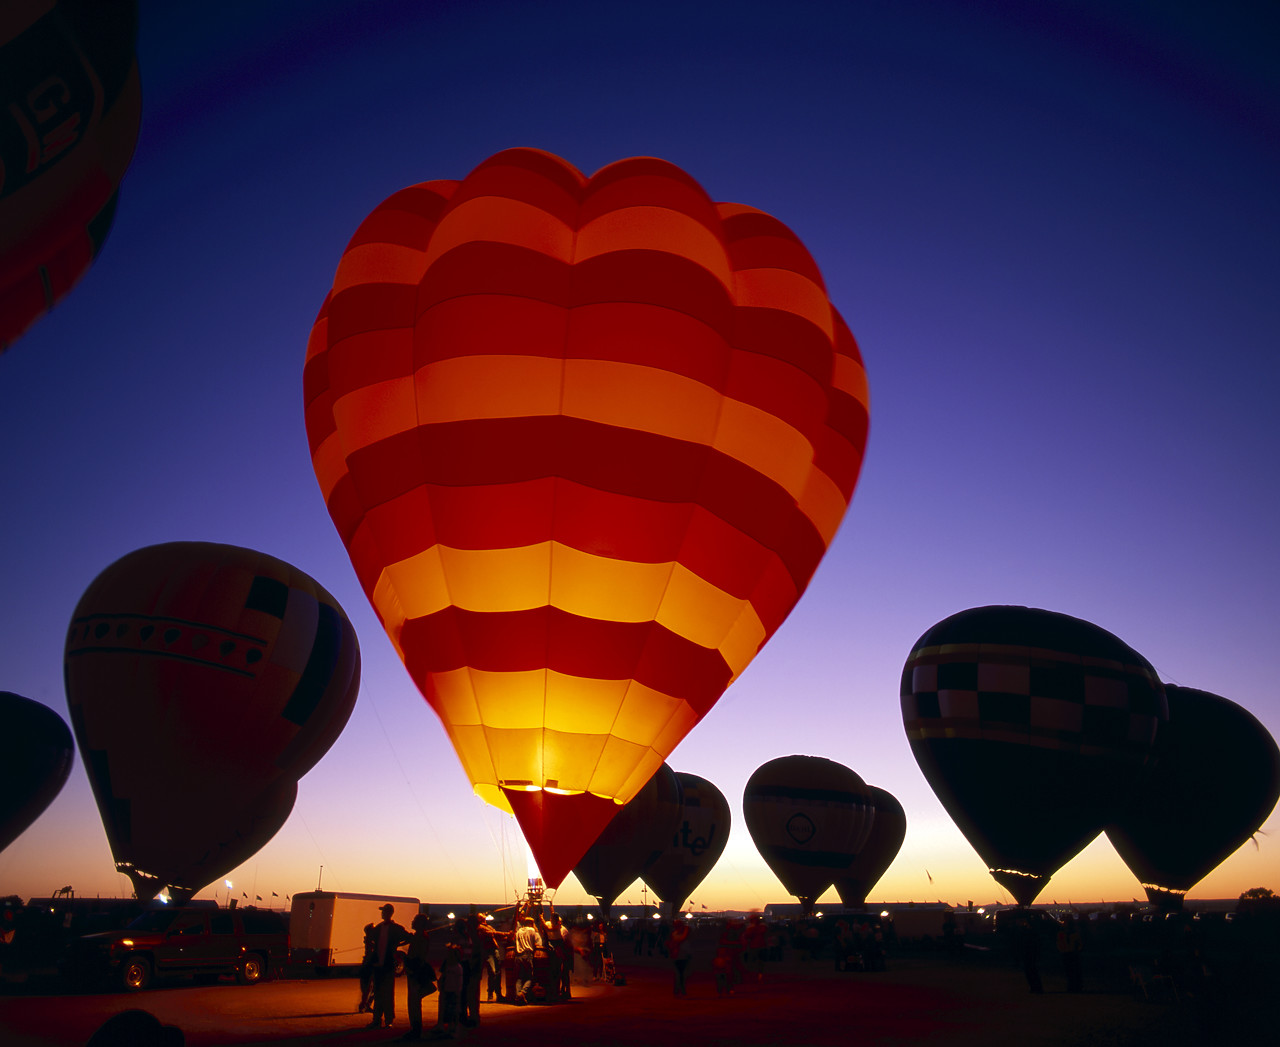 #990604-2 - Hot Air Balloons at Night, Albuquerque, New Mexico, USA